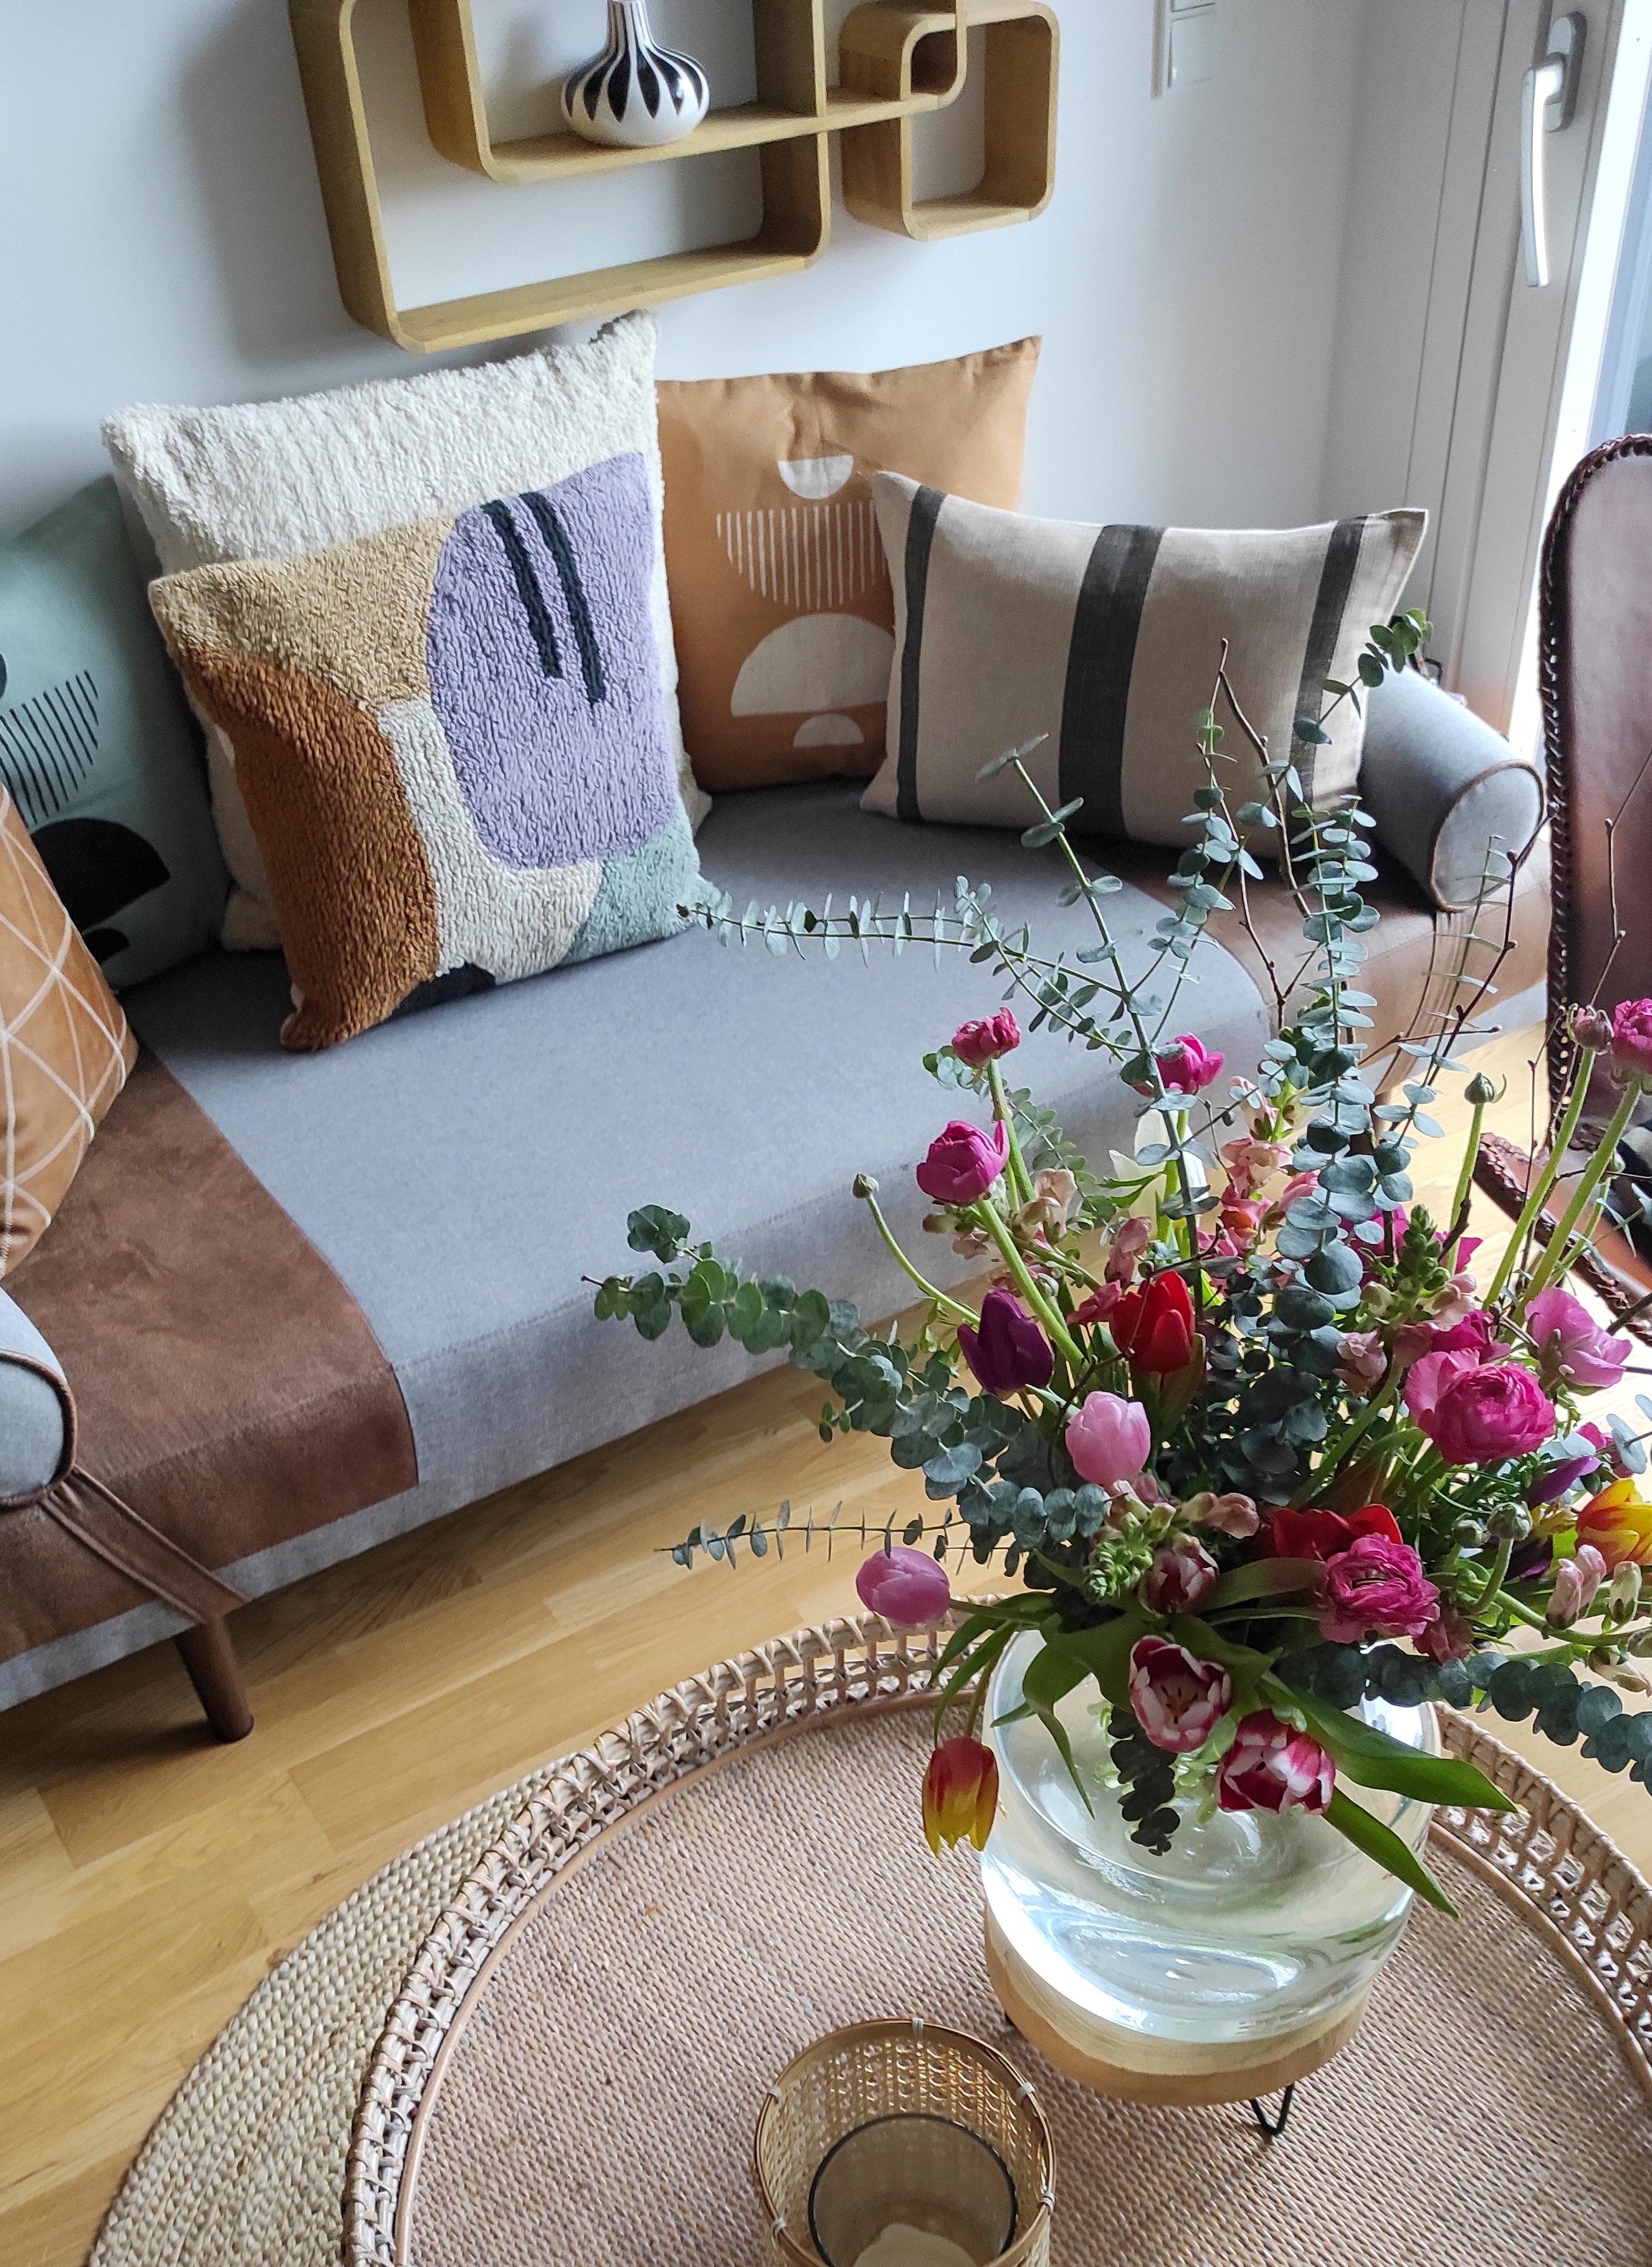 #interiortrends2022 #interior #lila #living #blumenliebe #decor #decoration #home #homelove #flowers #blumenstrauss 